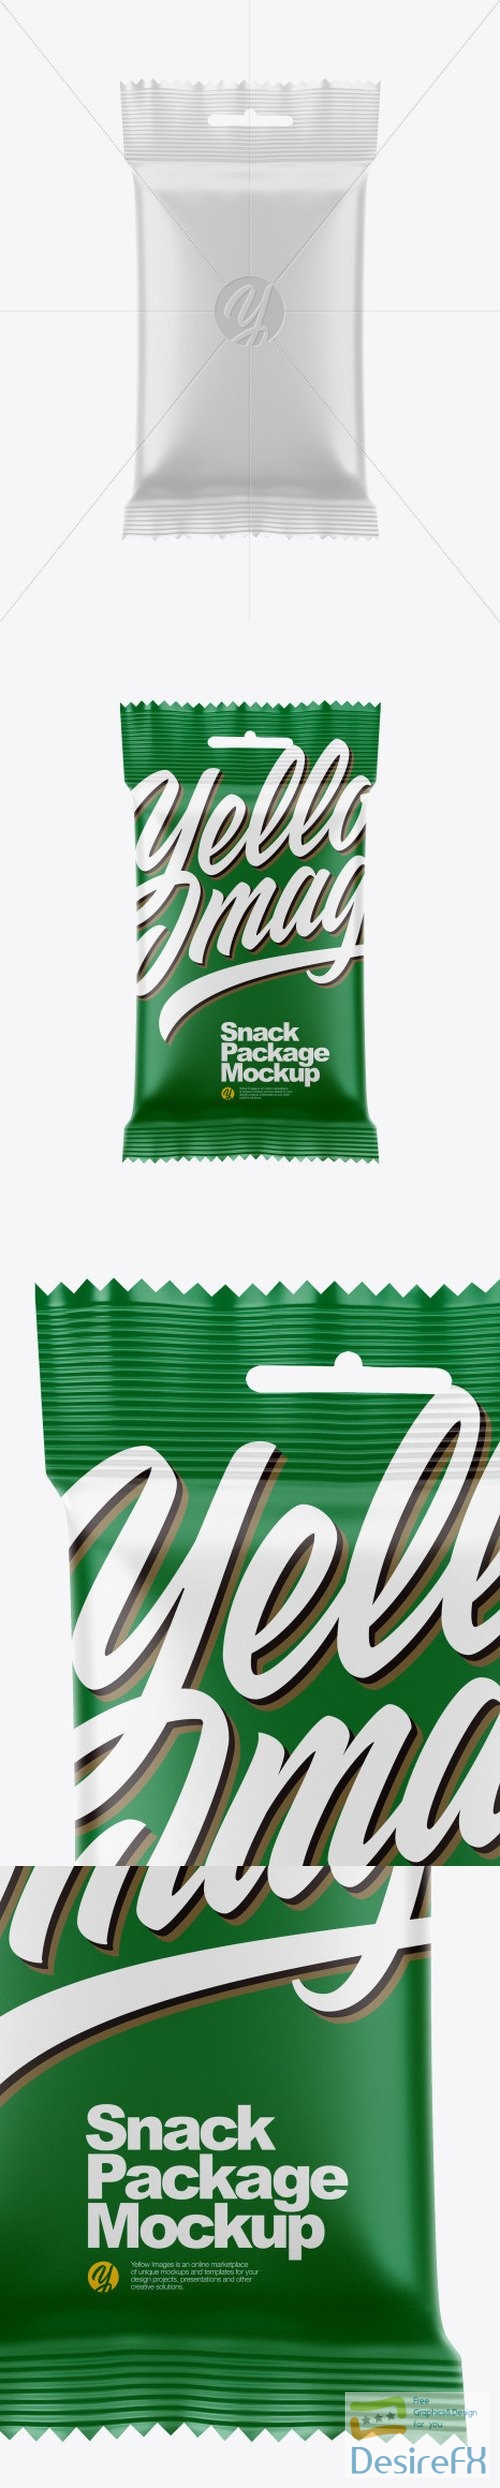 Snack Package Mockup 50399